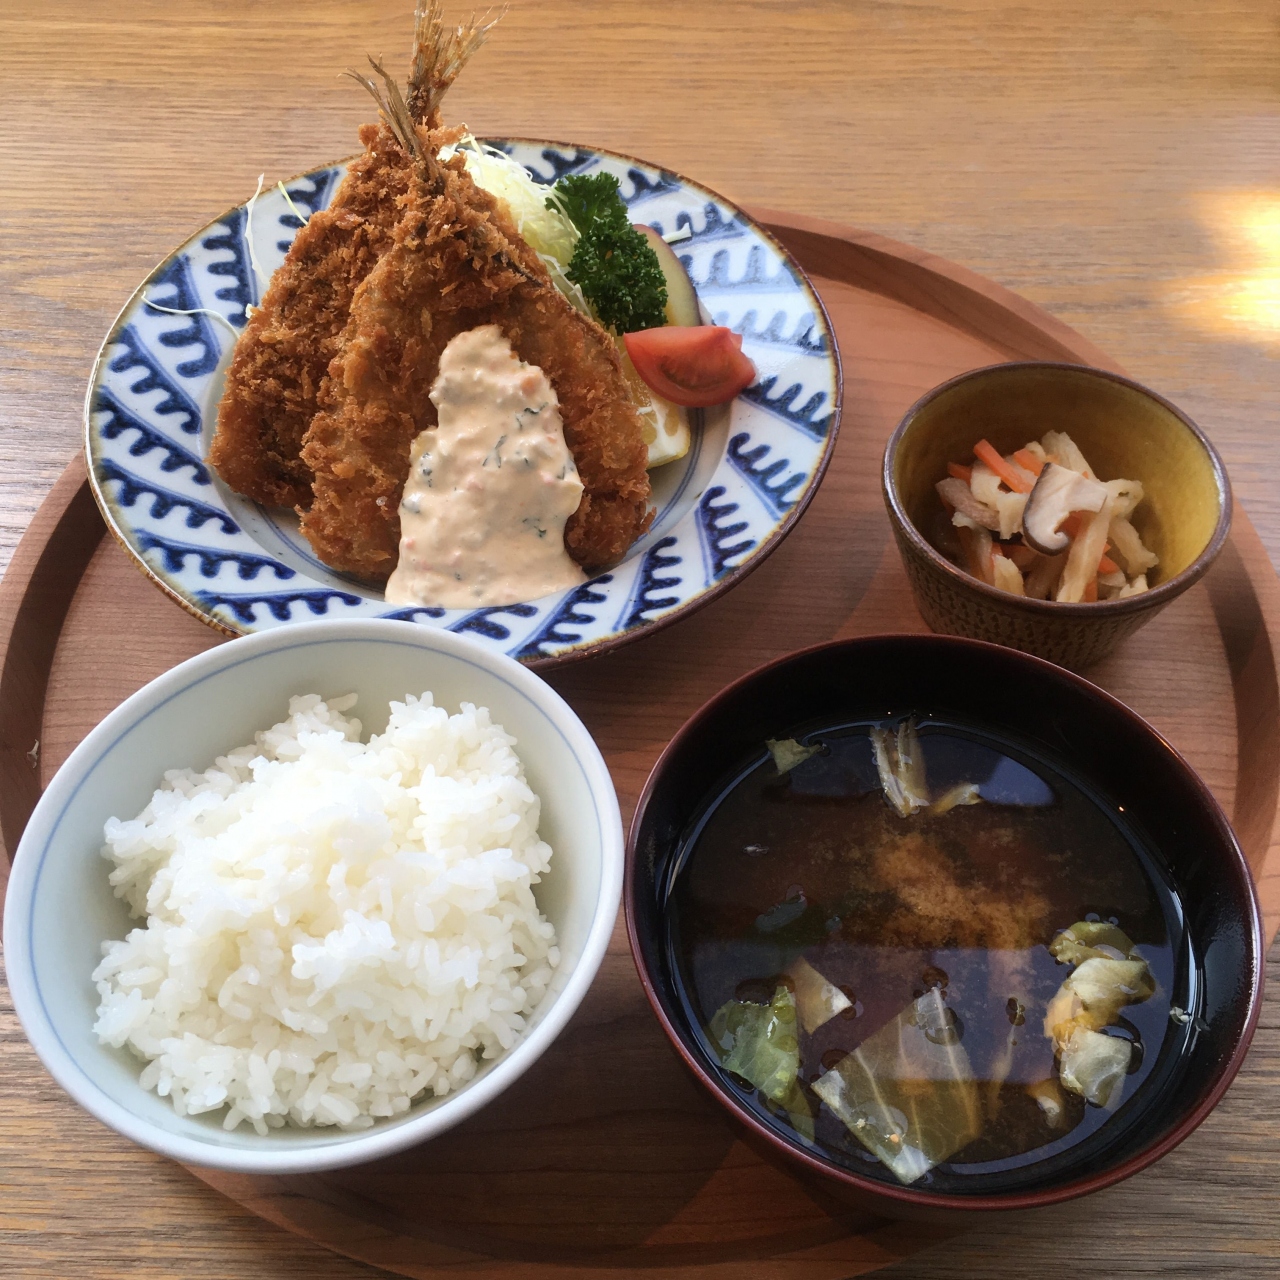 アジフライ定食の旅 19 01 02 渋谷 東京 の旅行記 ブログ By Middx さん フォートラベル